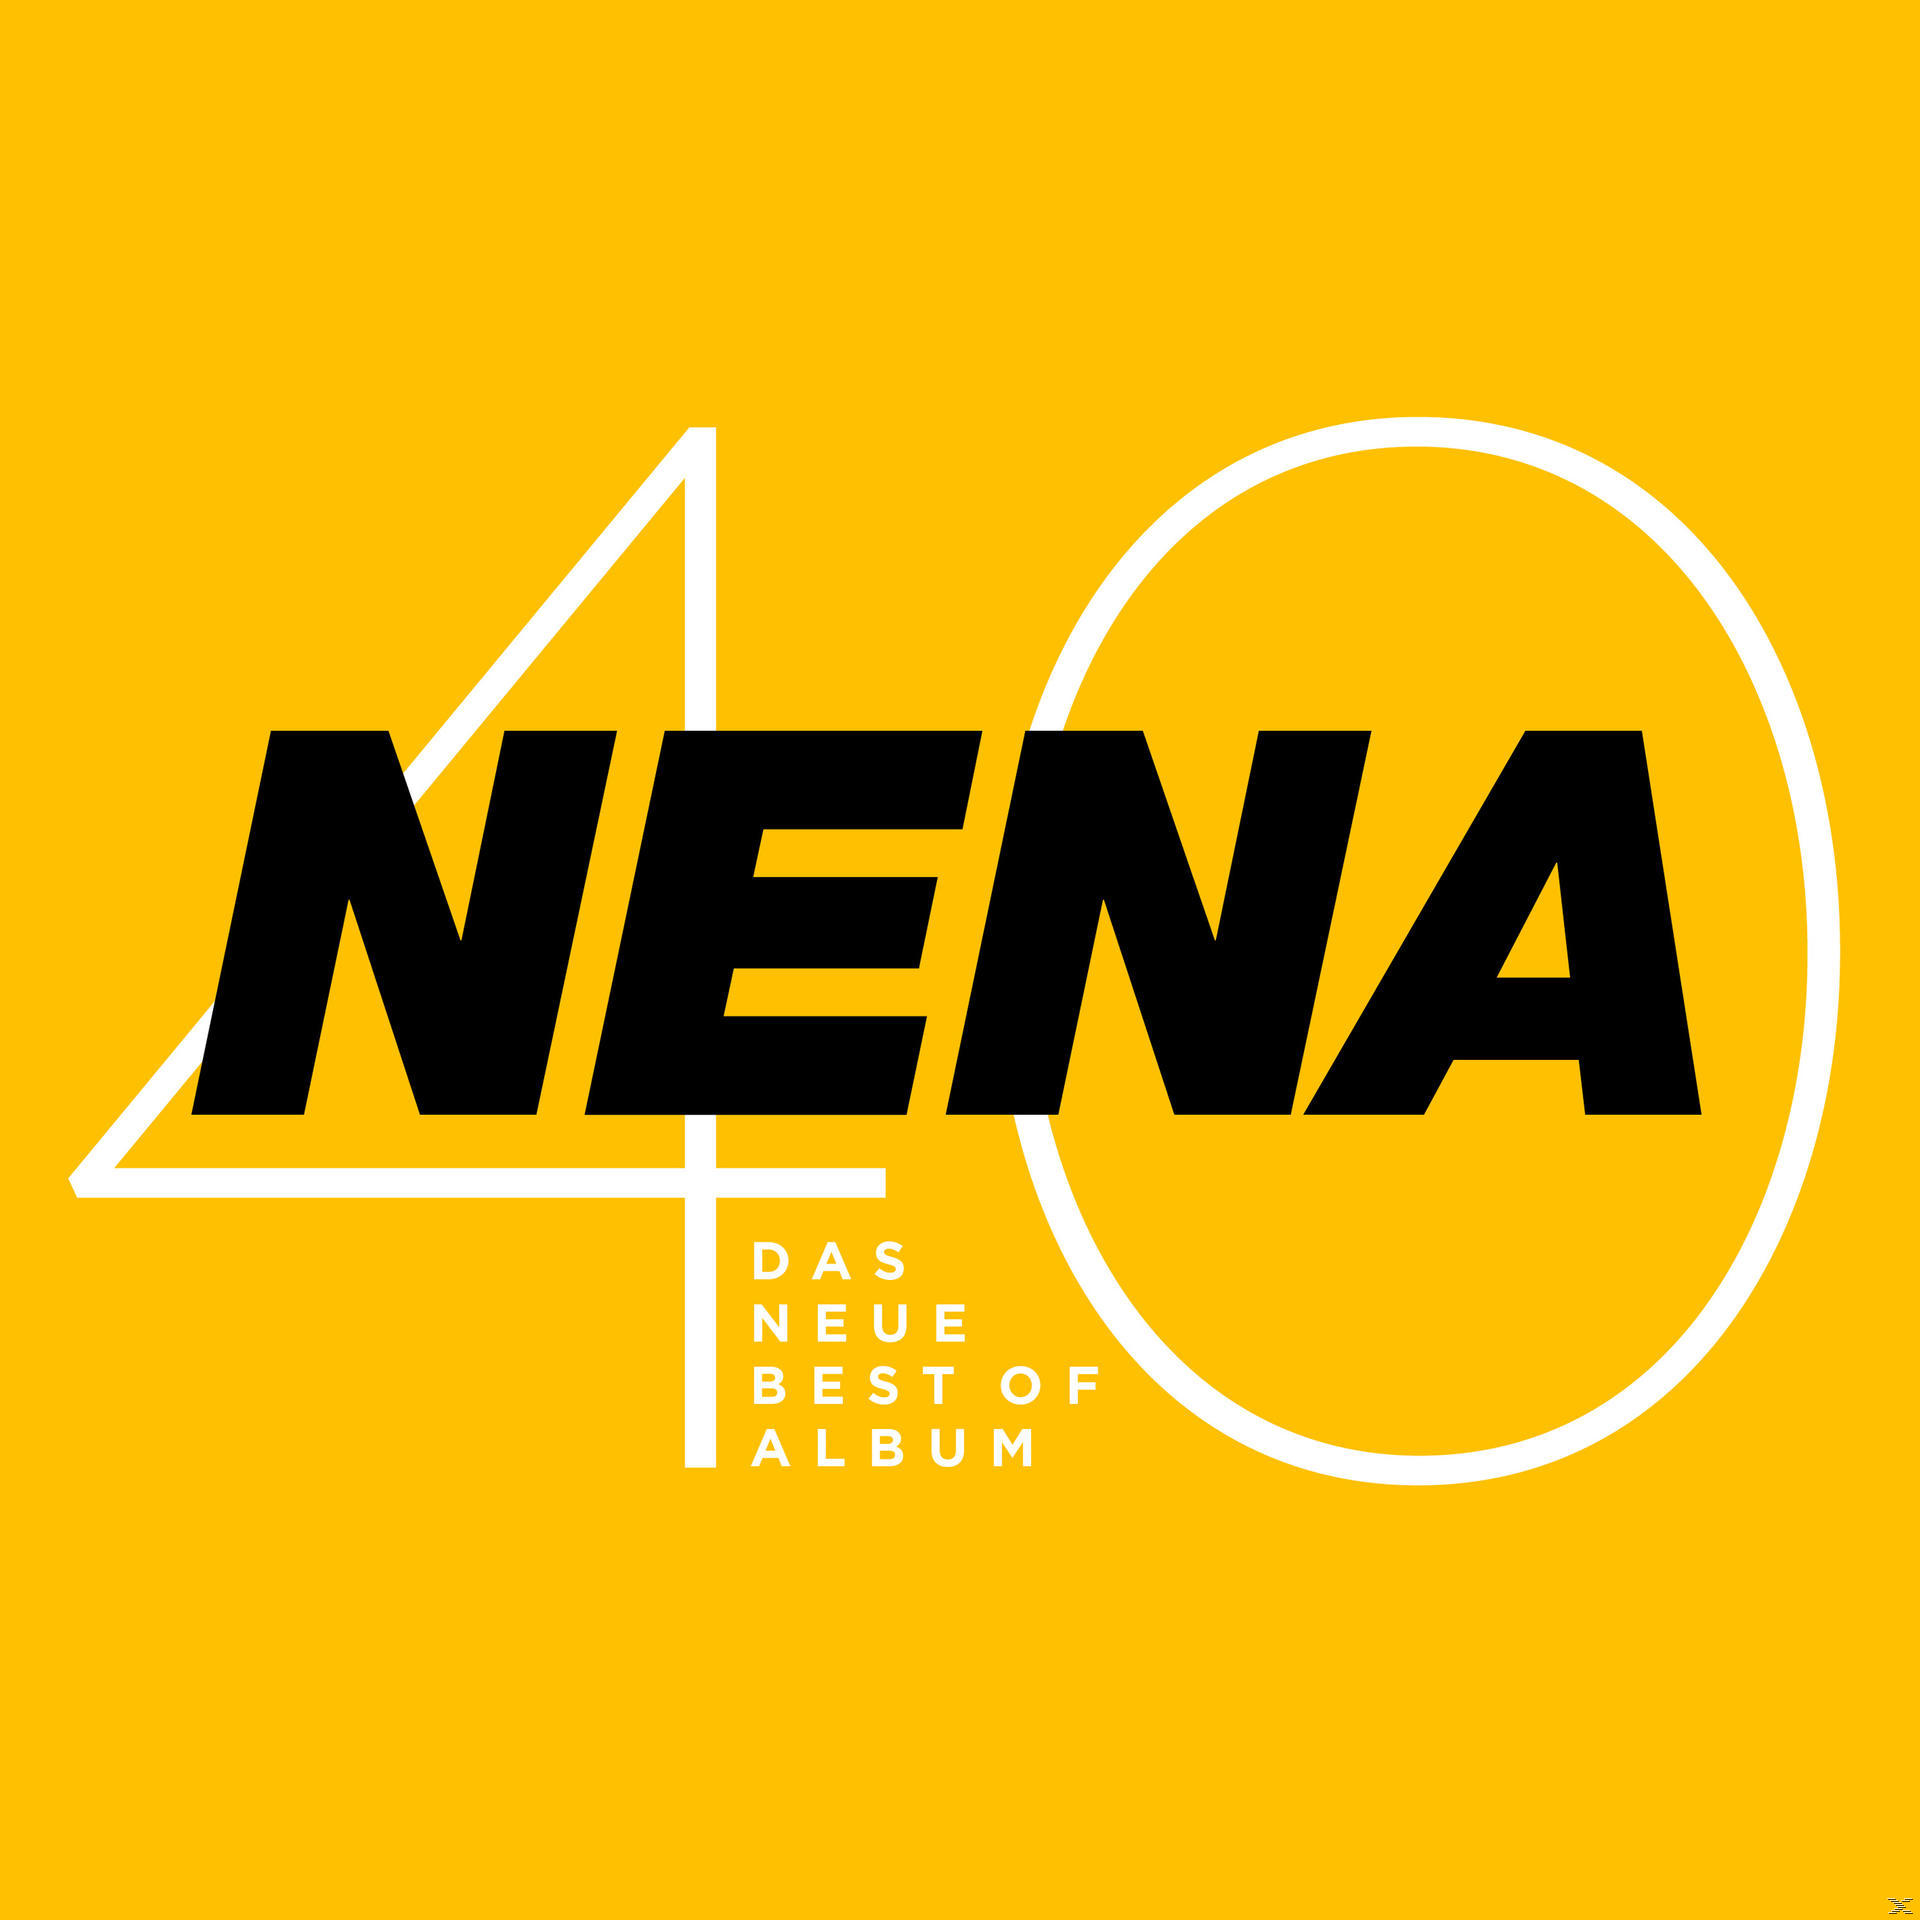 Nena - 40 - Best - Album Das Neue (CD) Of